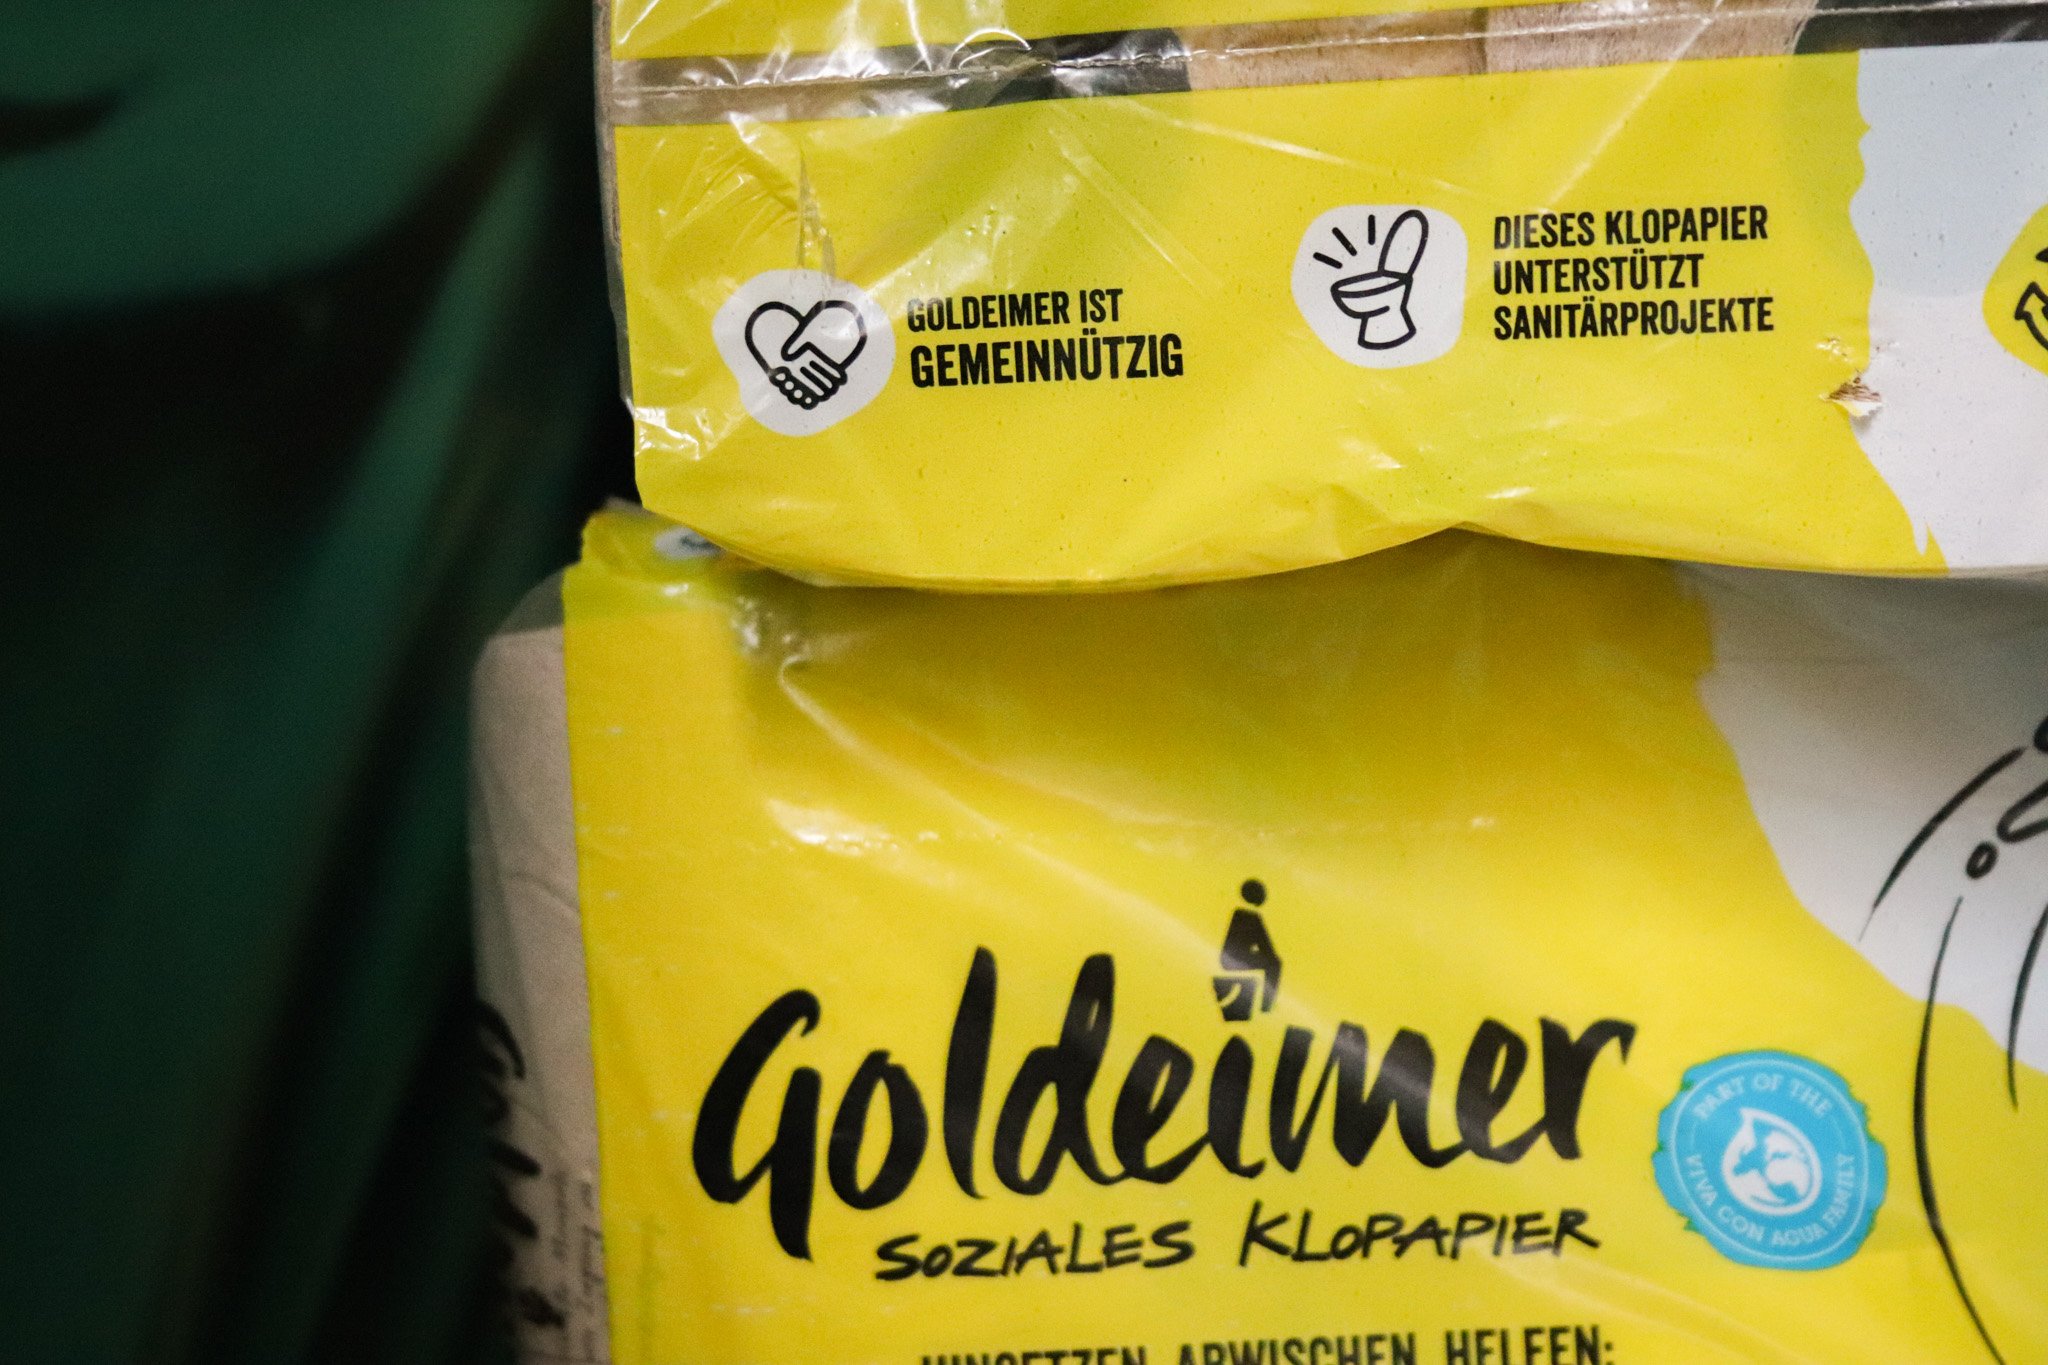 Goldeimer Klopapier Wildplastic